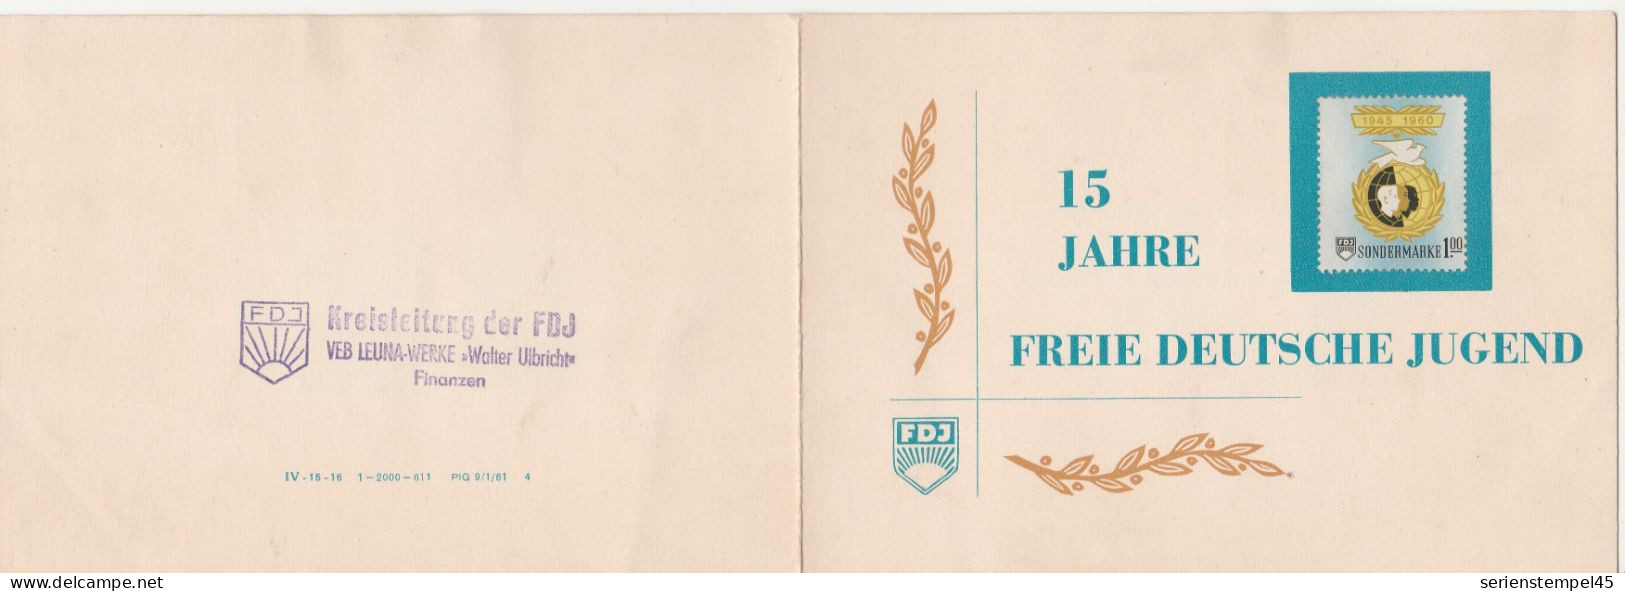 DDR 15 Jahre Freie Deutsche Jugend 1945 - 1960 Sondermarke 1 M 3 Marken FDJ Klappkarte - Briefe U. Dokumente